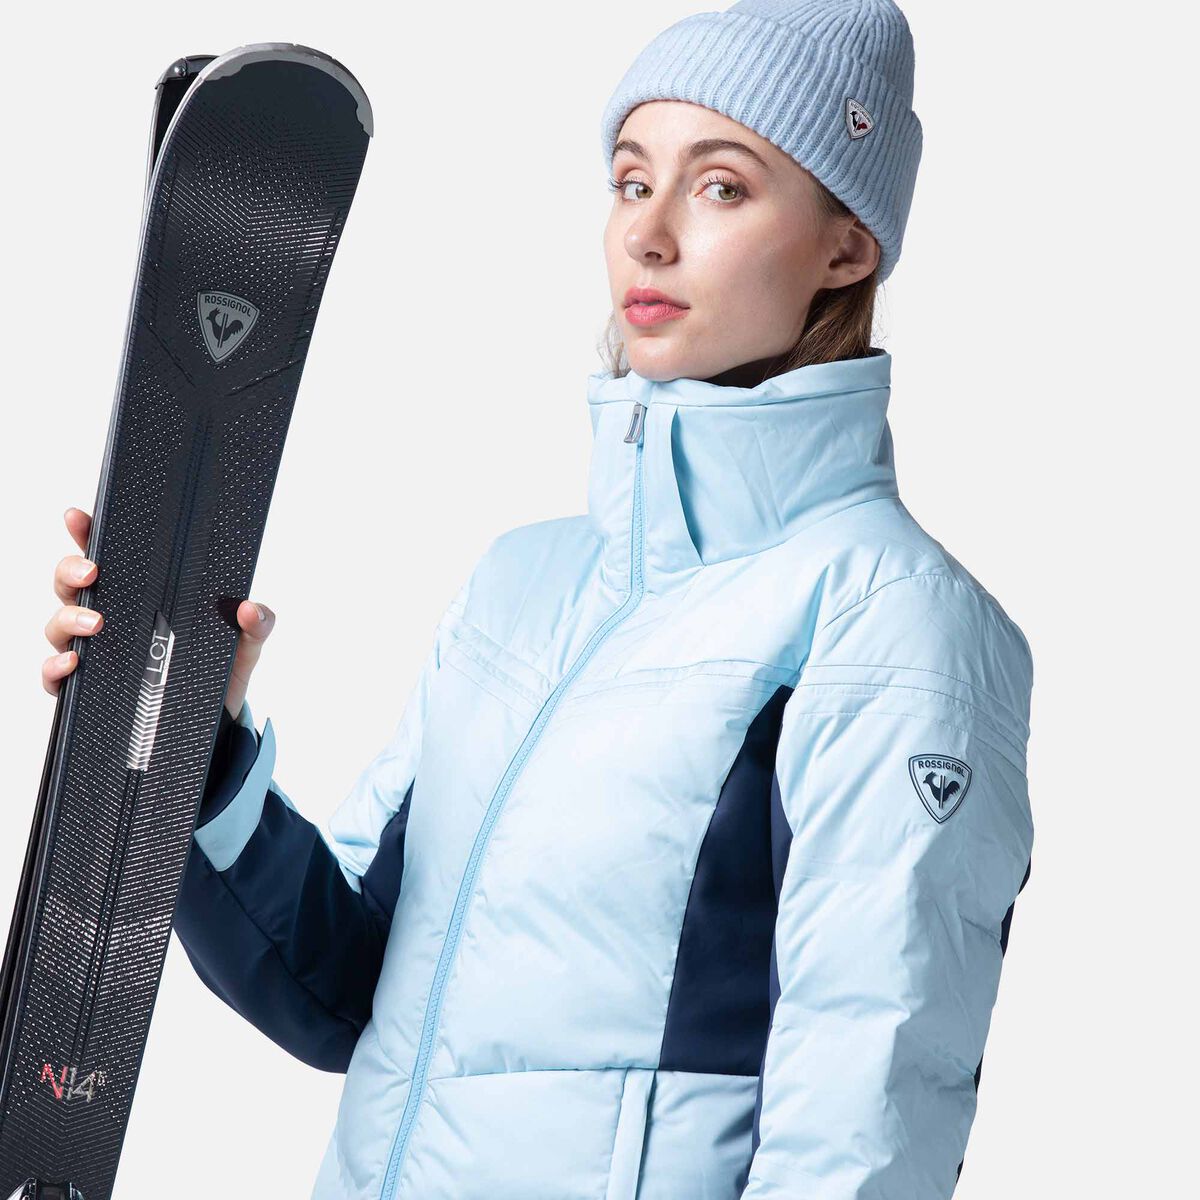 Rossignol Ski Jacket - Chaqueta de esquí - Mujer